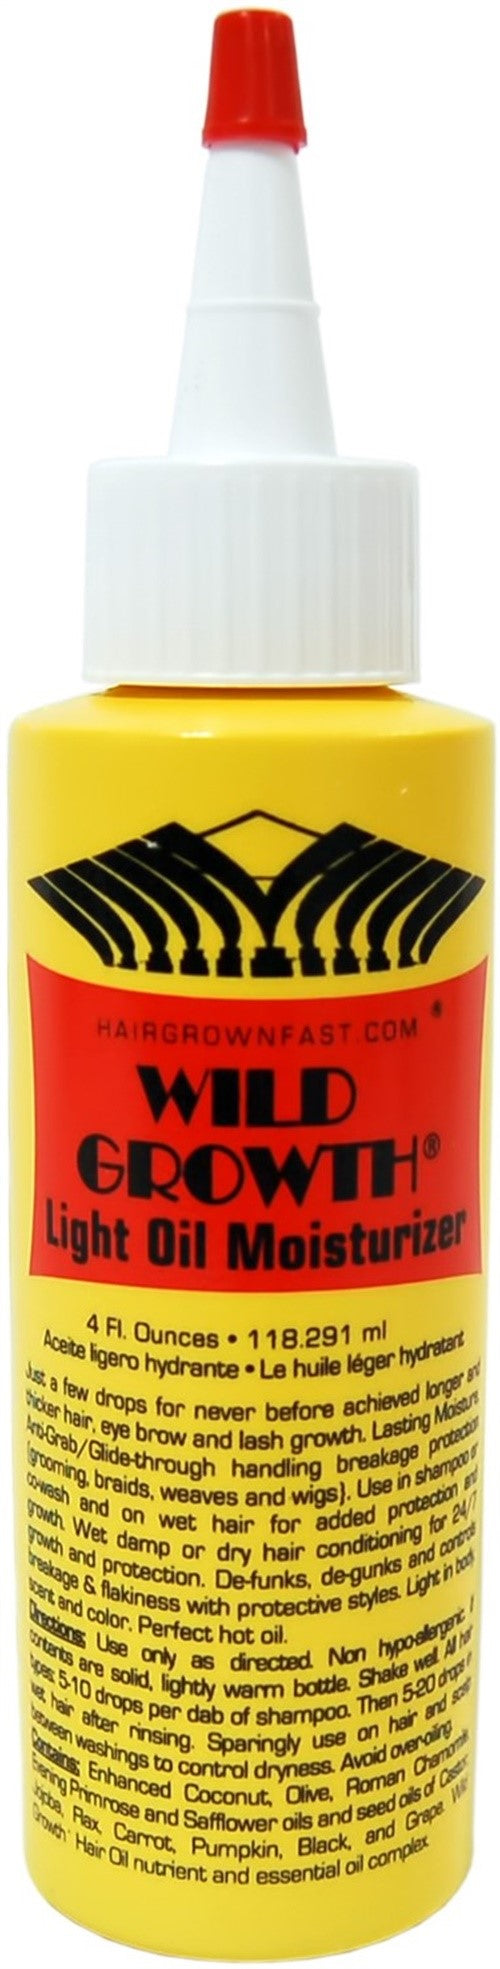 wild-growth-light-oil